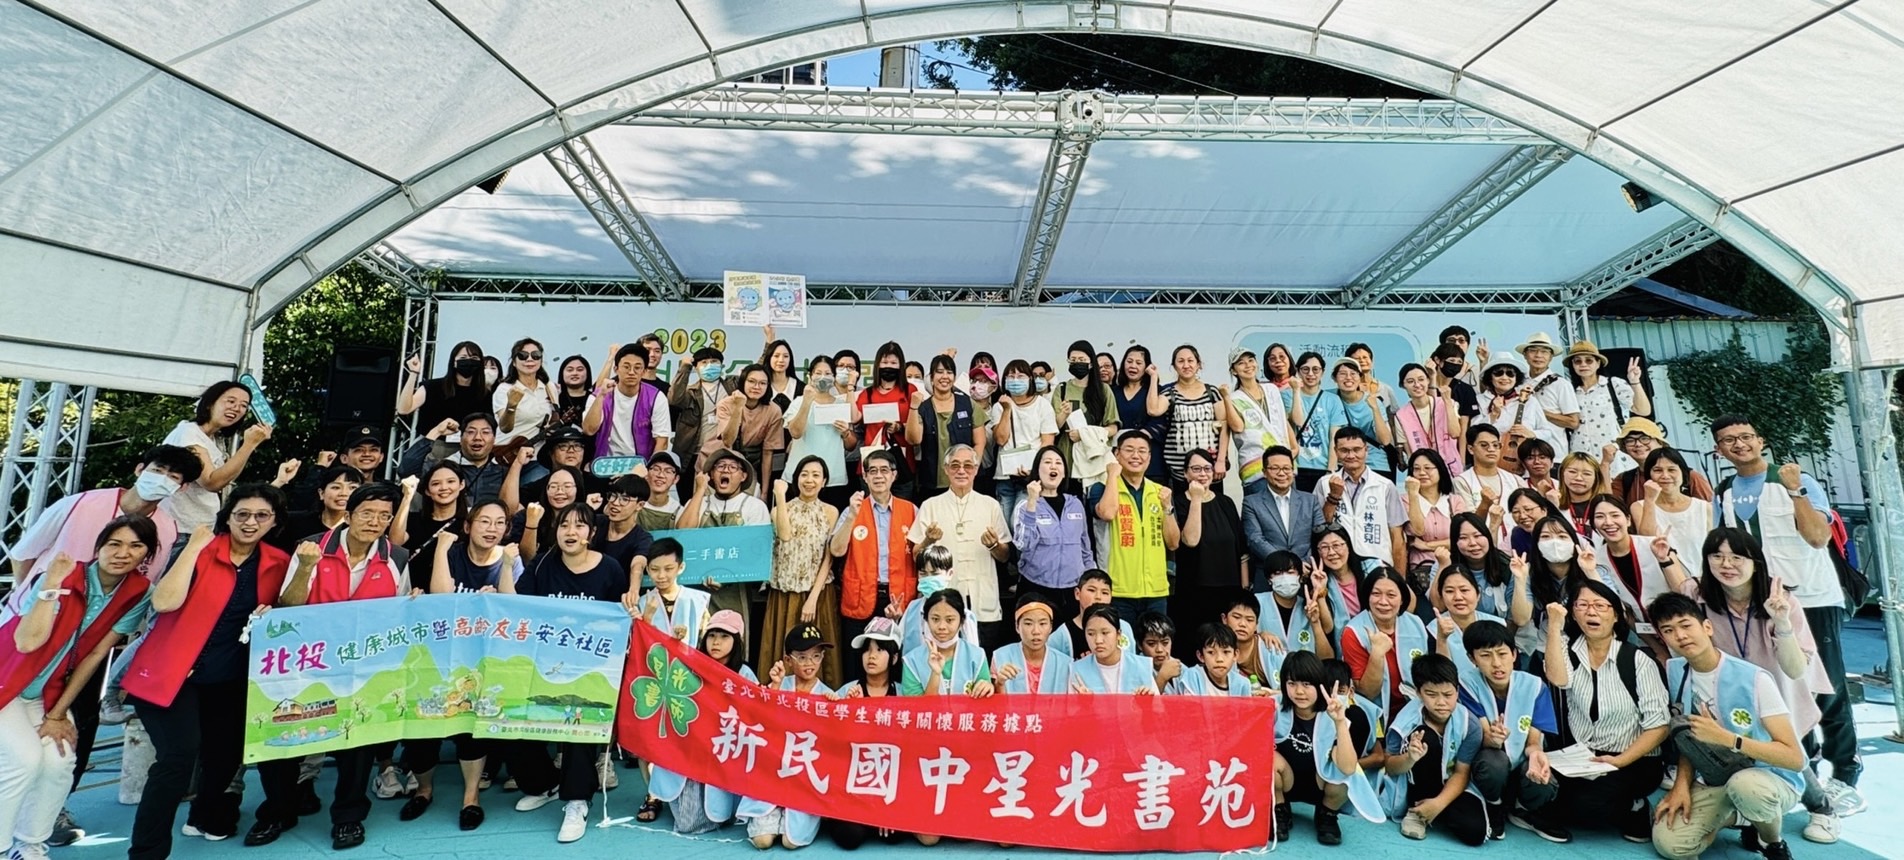 家 扶 基 金 會 附 設 的 「 台 北 青 角 」 ， 每 年 都 結 合 社 區 舉 辦 讓 青 少 年 施 展 才 華 的 公 益 嘉 年 華 ， 筆 者 很 榮 幸 持 續 多 年 以 扶 幼 委 員 的 身 分 出 席 支 持 ！ 